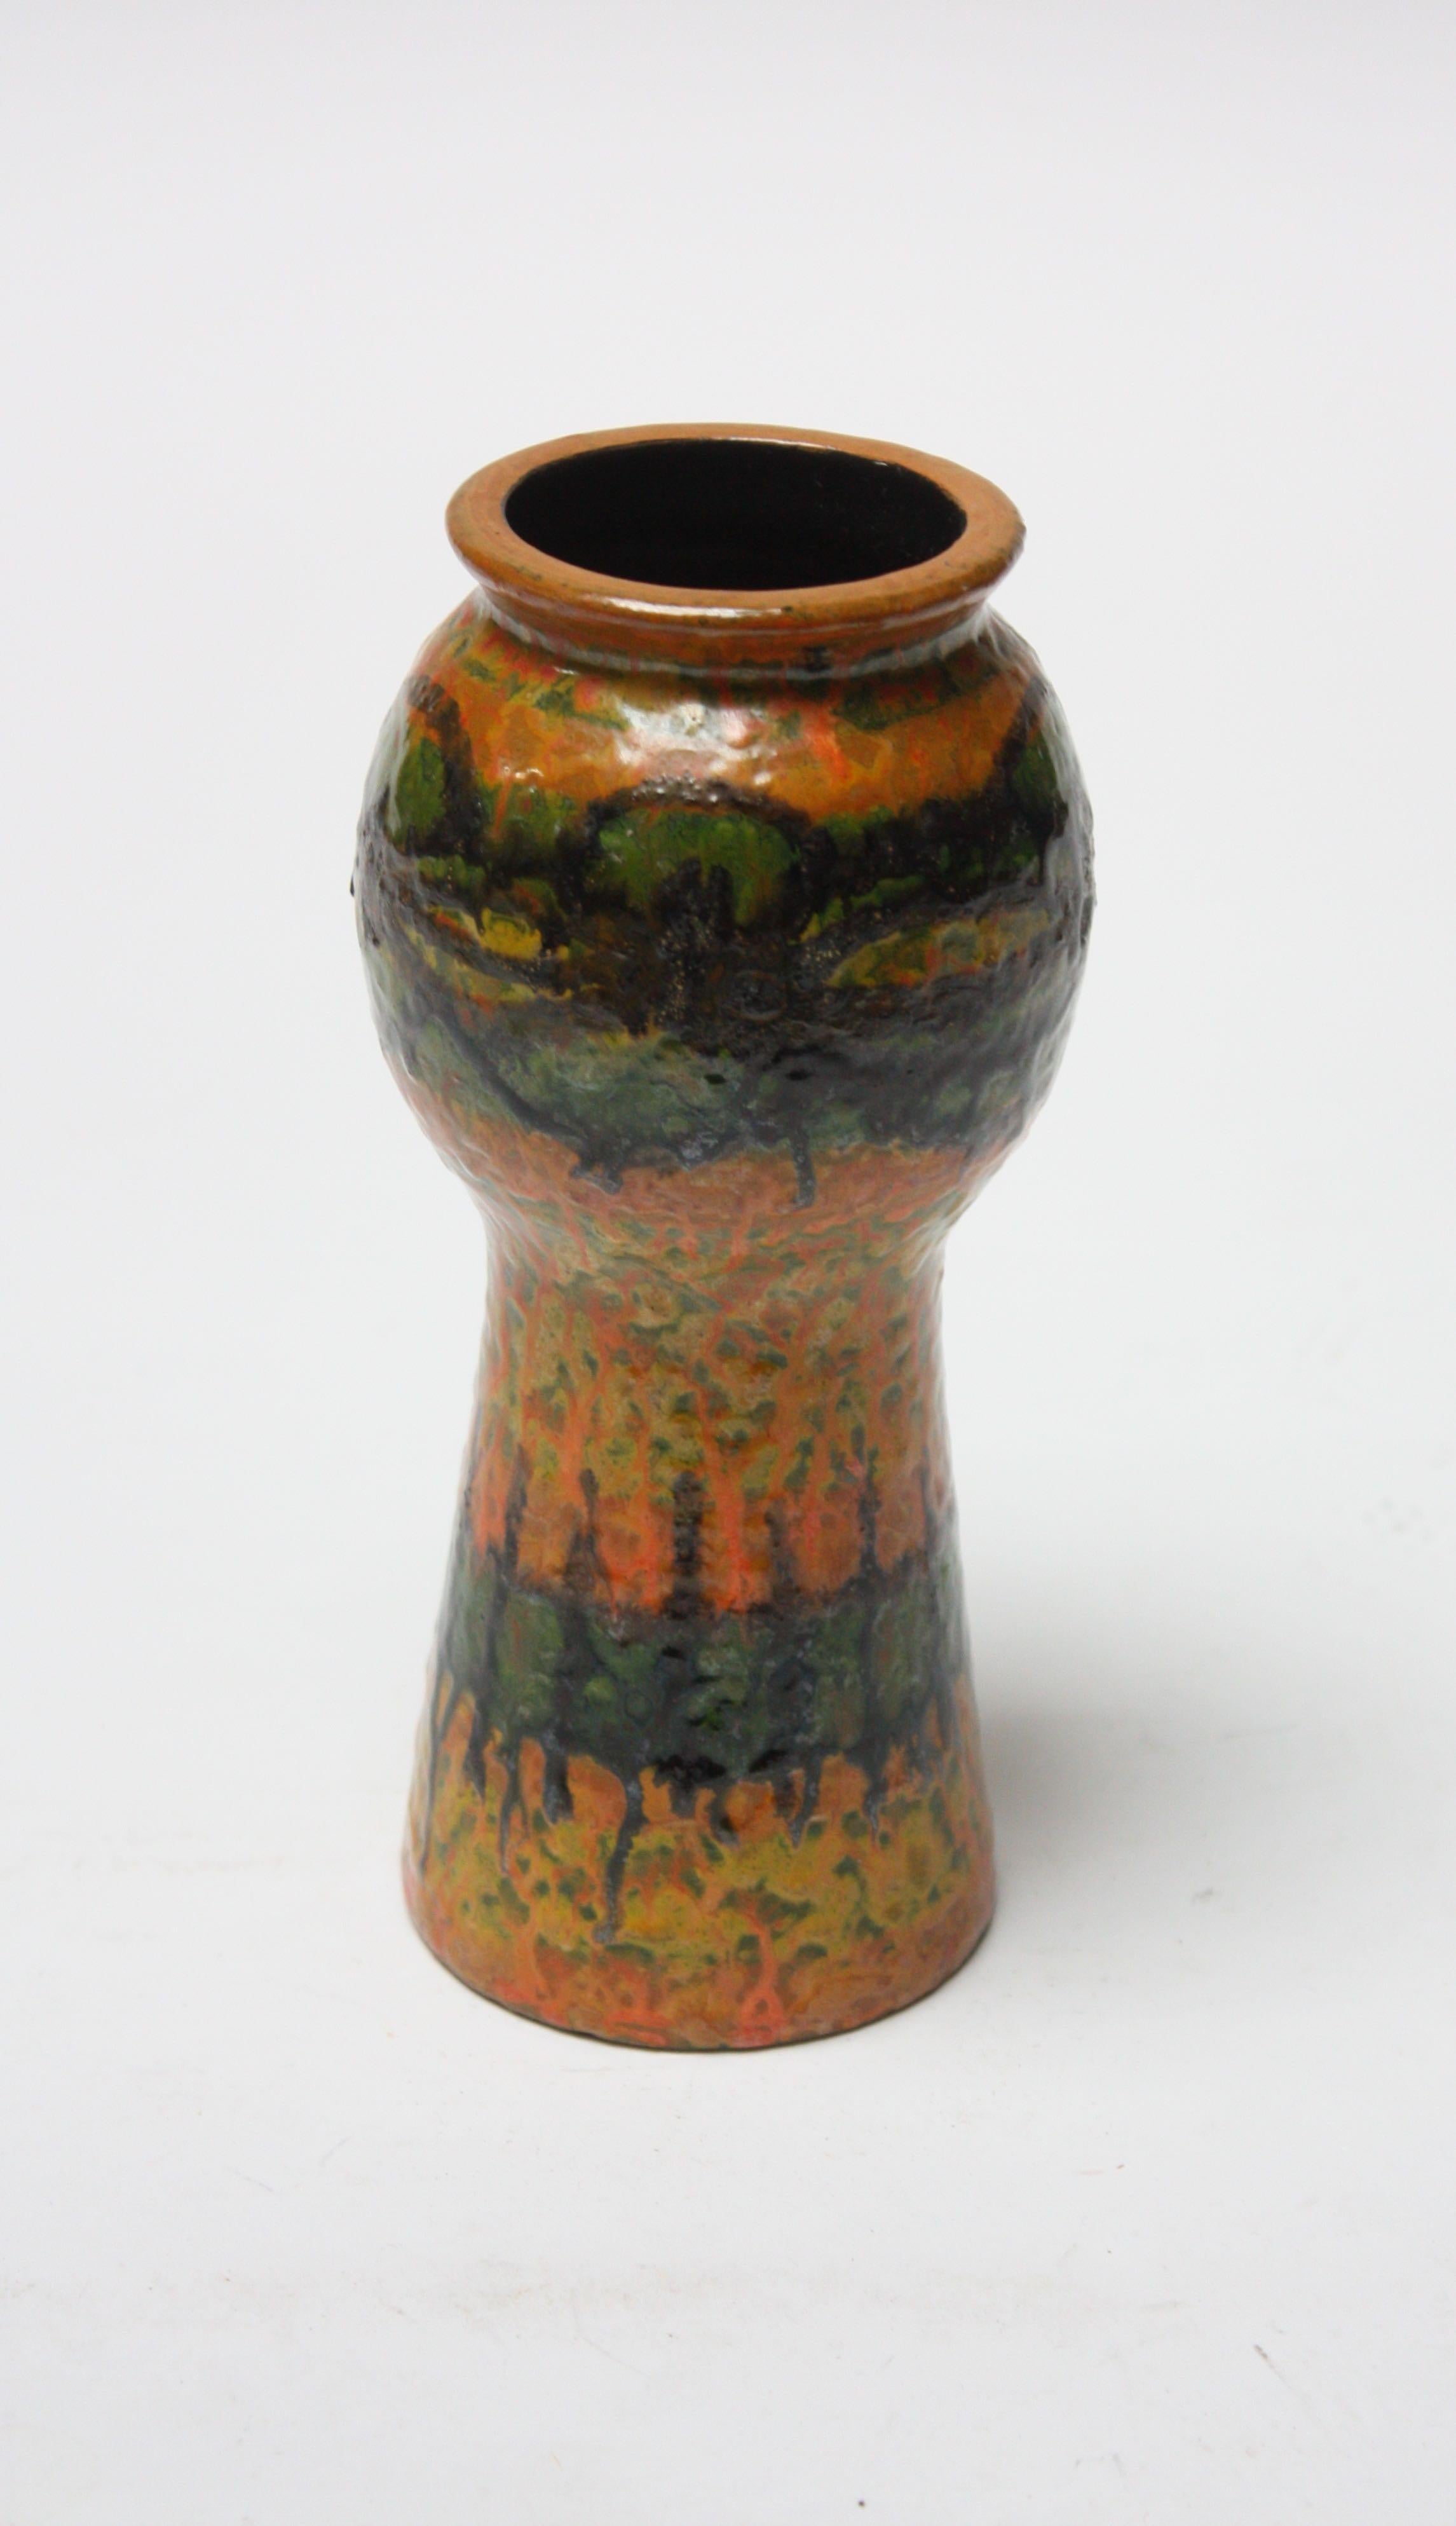 Kleine Vase aus Studio-Keramik, ca. 1960er Jahre (wahrscheinlich italienisch, aber unmarkiert). Stilvolles Muster und attraktive, kräftige Farben in Grün, Ocker, Orange, Gelb und Schwarz.
Maße: Durchmesser 3,25